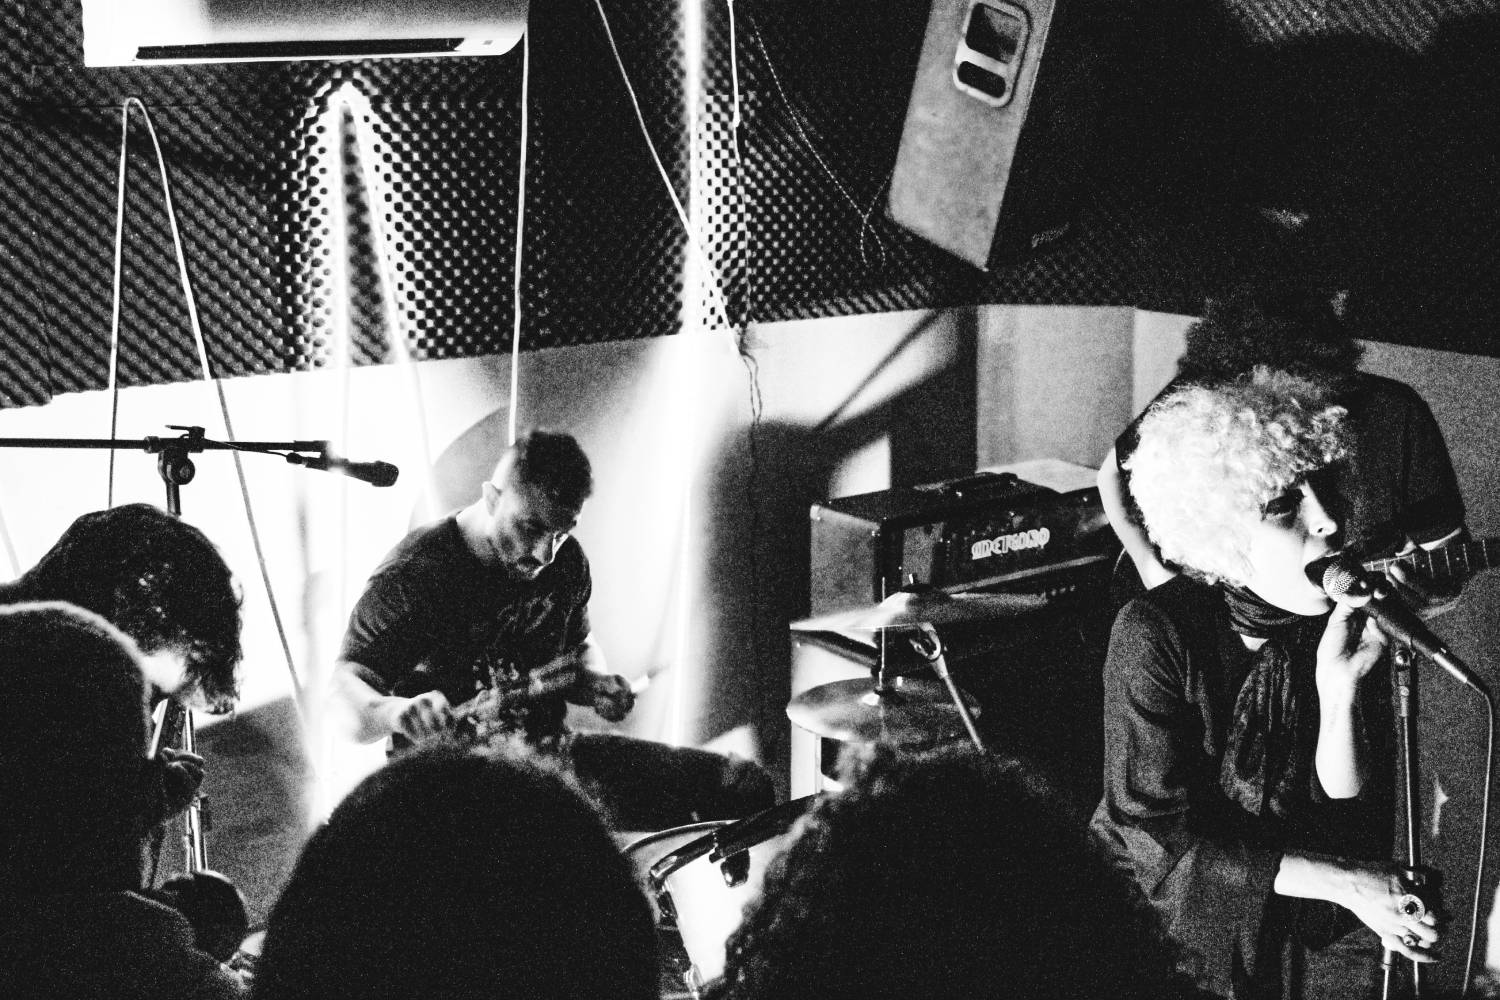 A banda Inês é Morta, de São Paulo, aparece em uma foto em preto e branco fazendo um show ao vivo